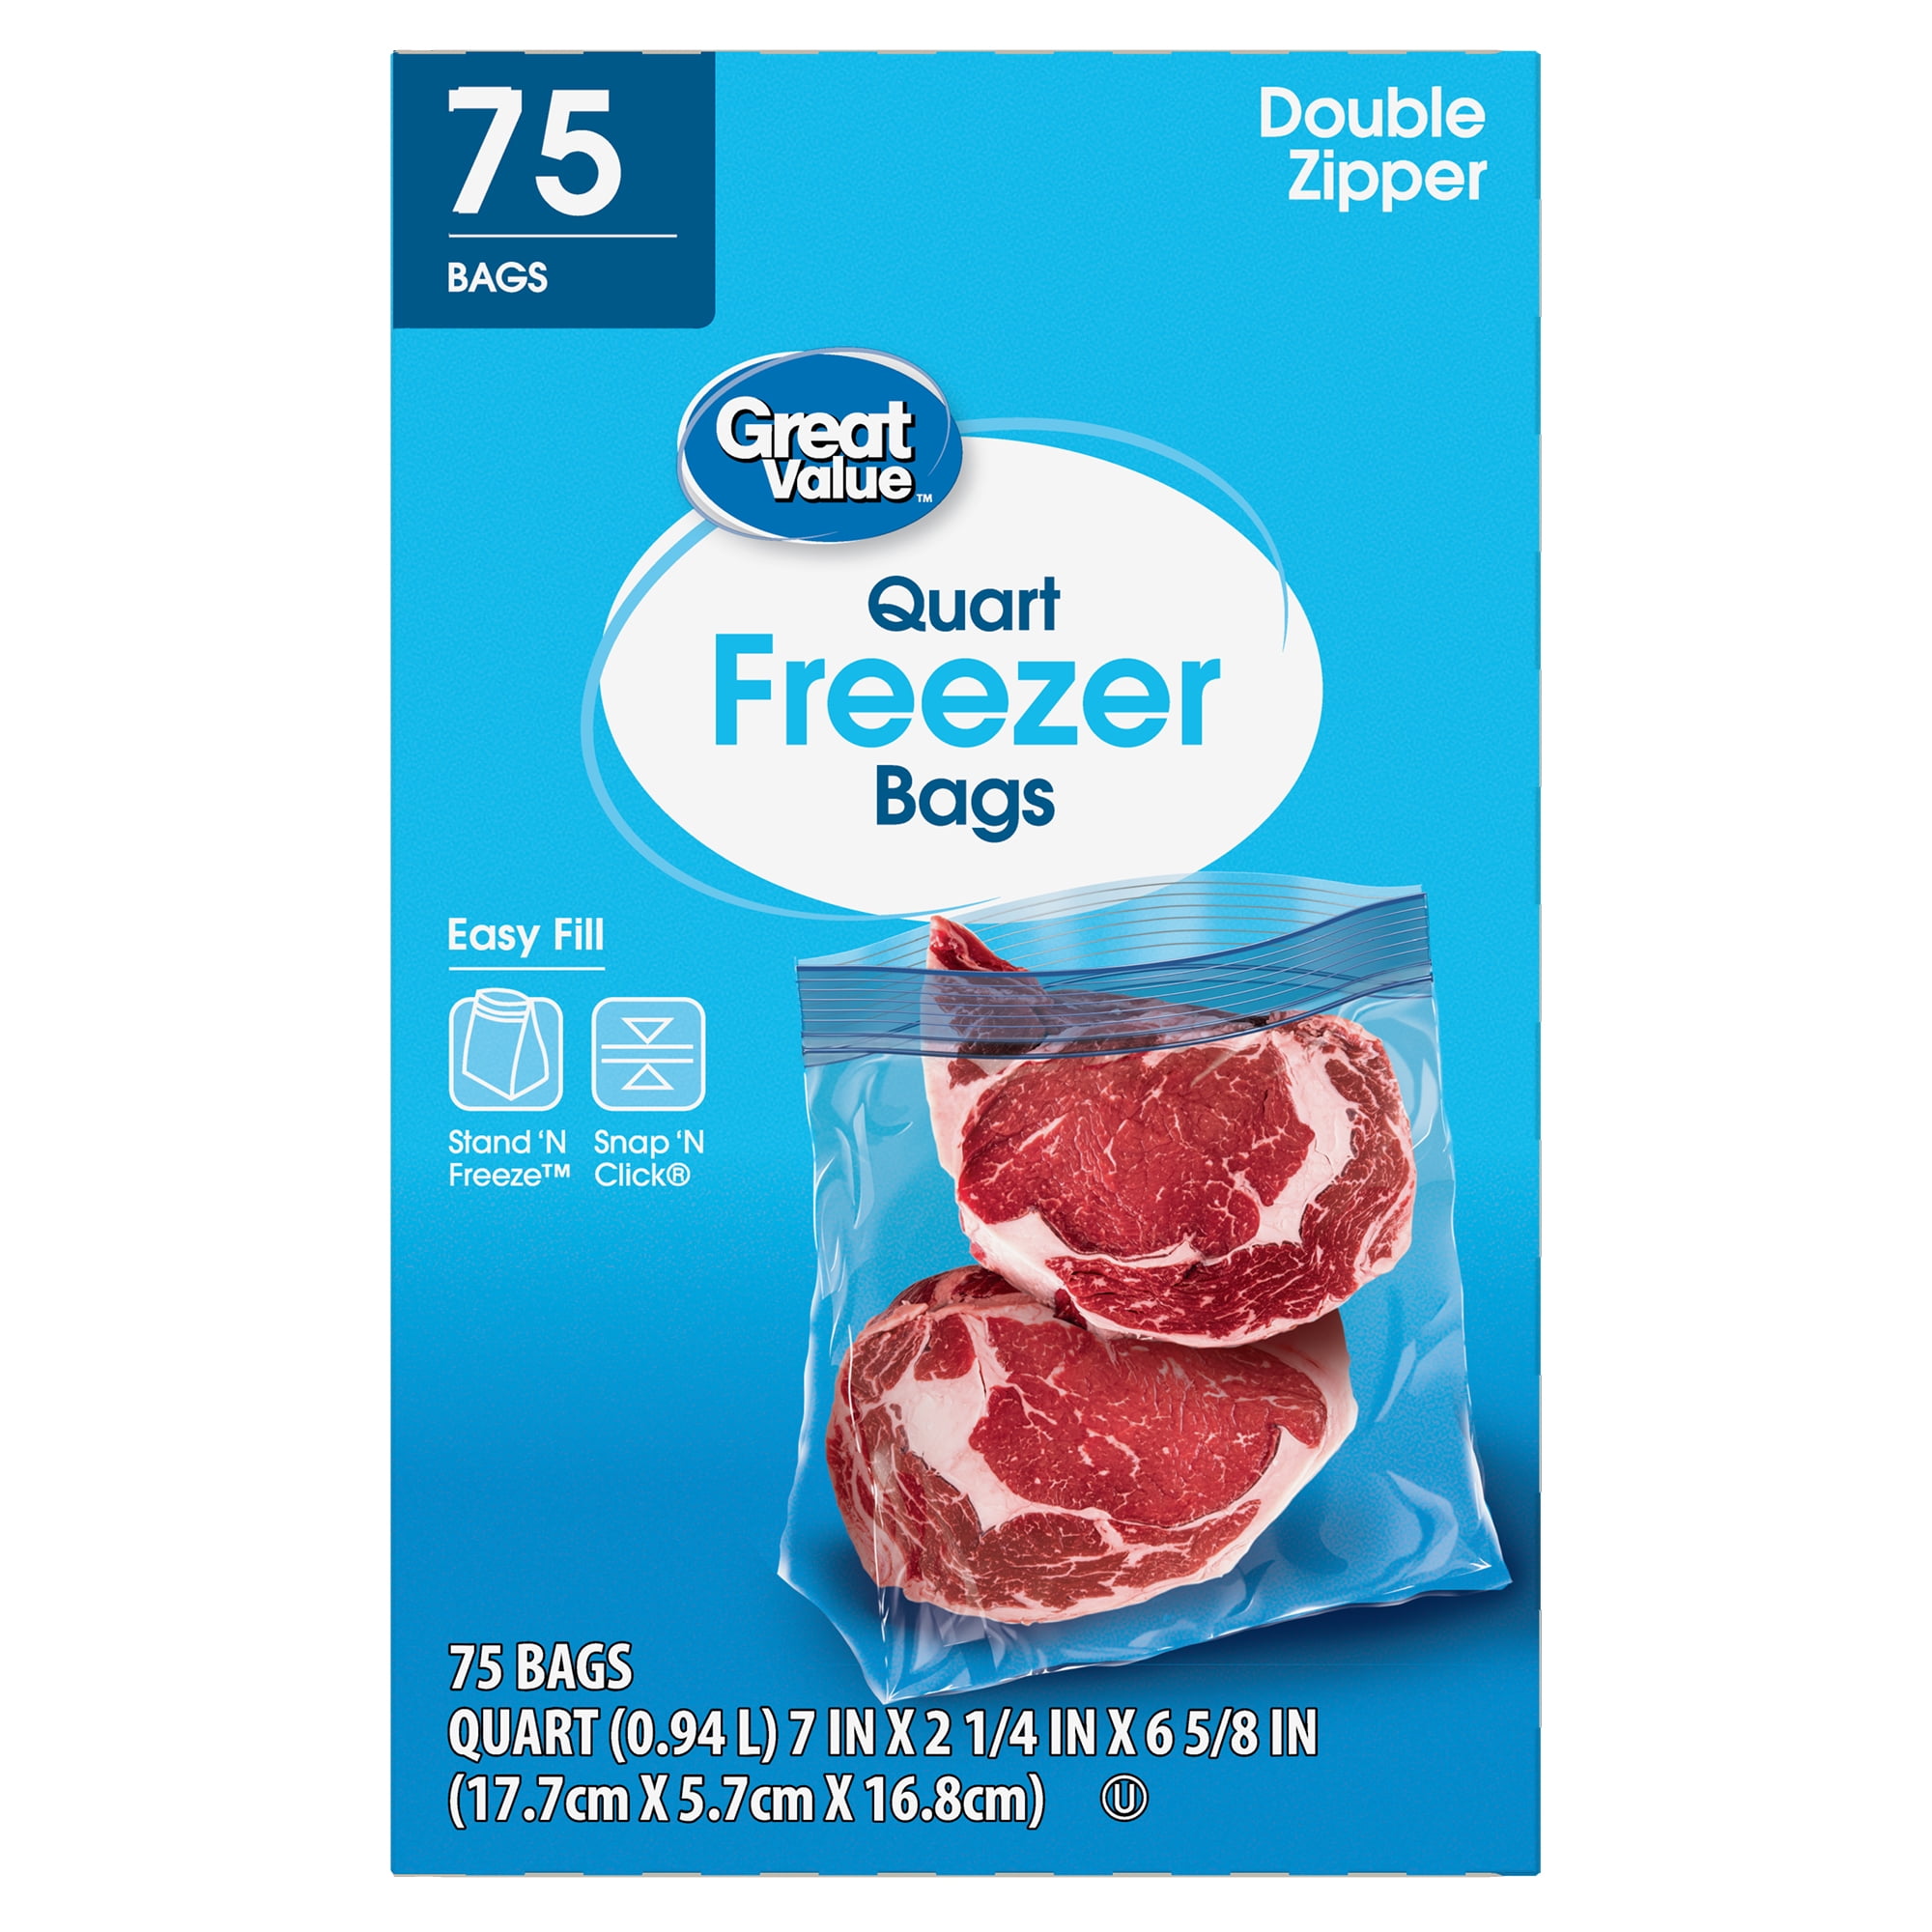 Quart Double Zipper Freezer Bag, 40 quart size bags at Whole Foods